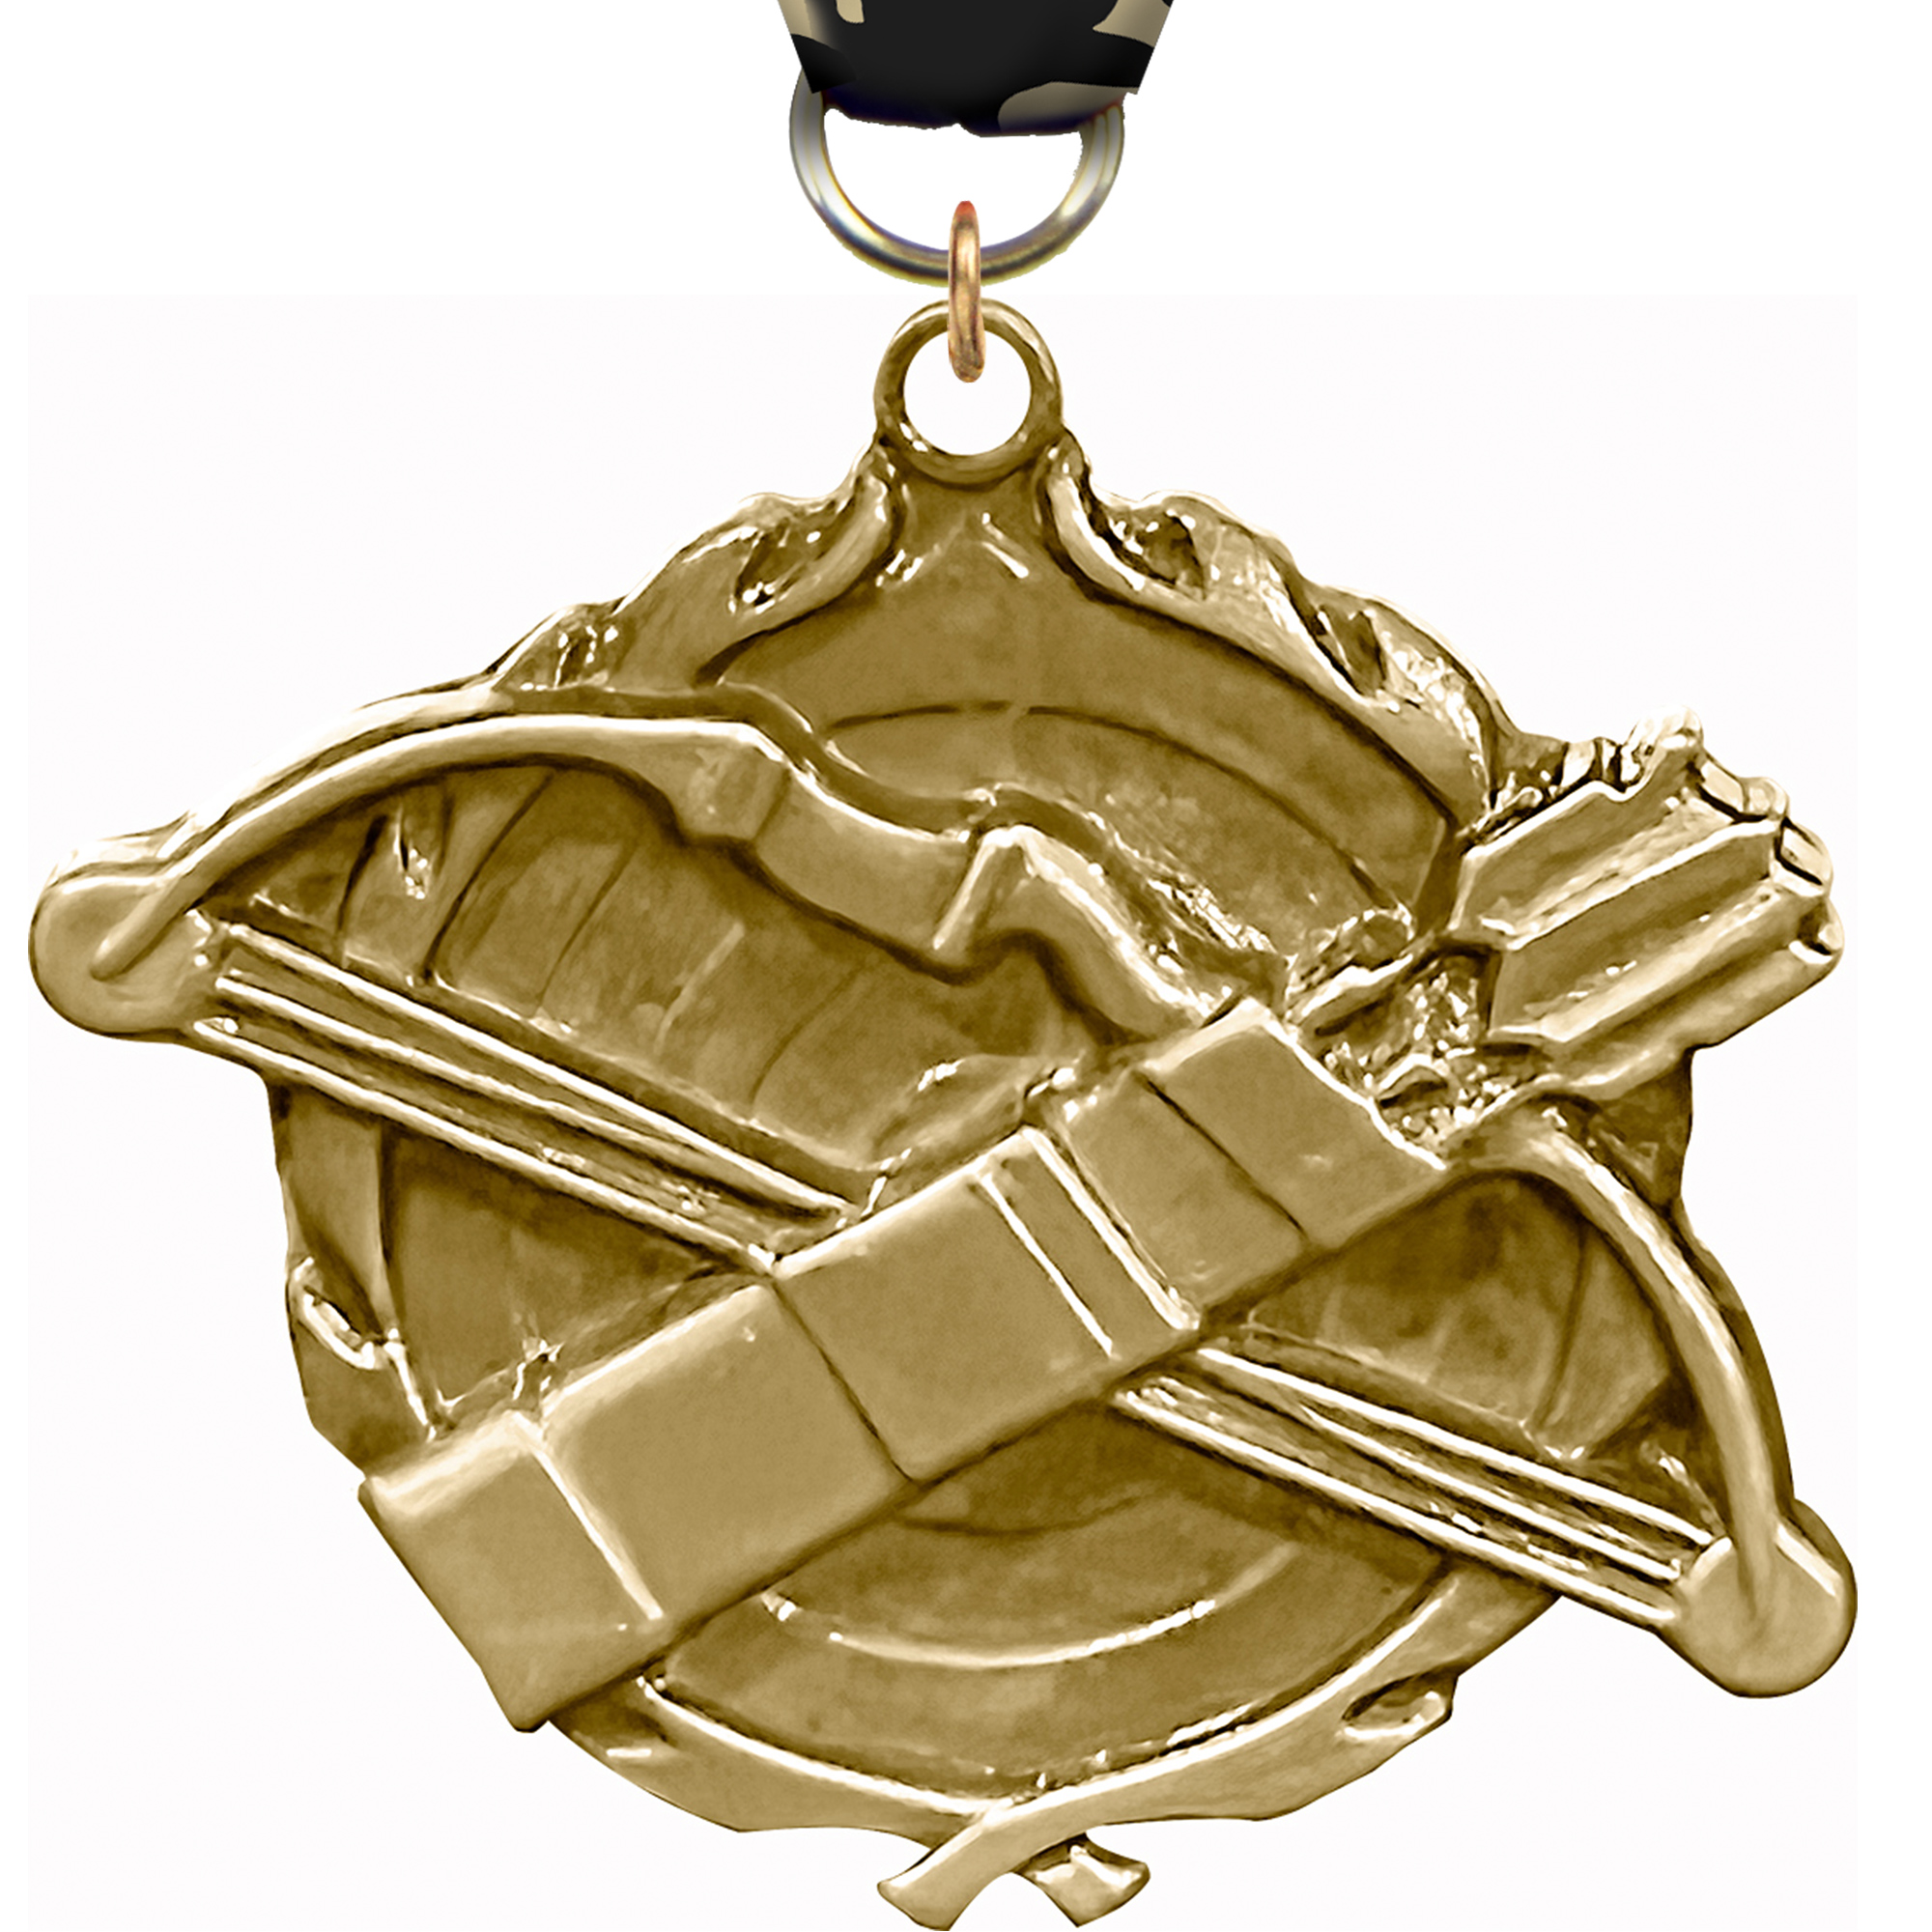 1.75 inch Archery Wreath Medal